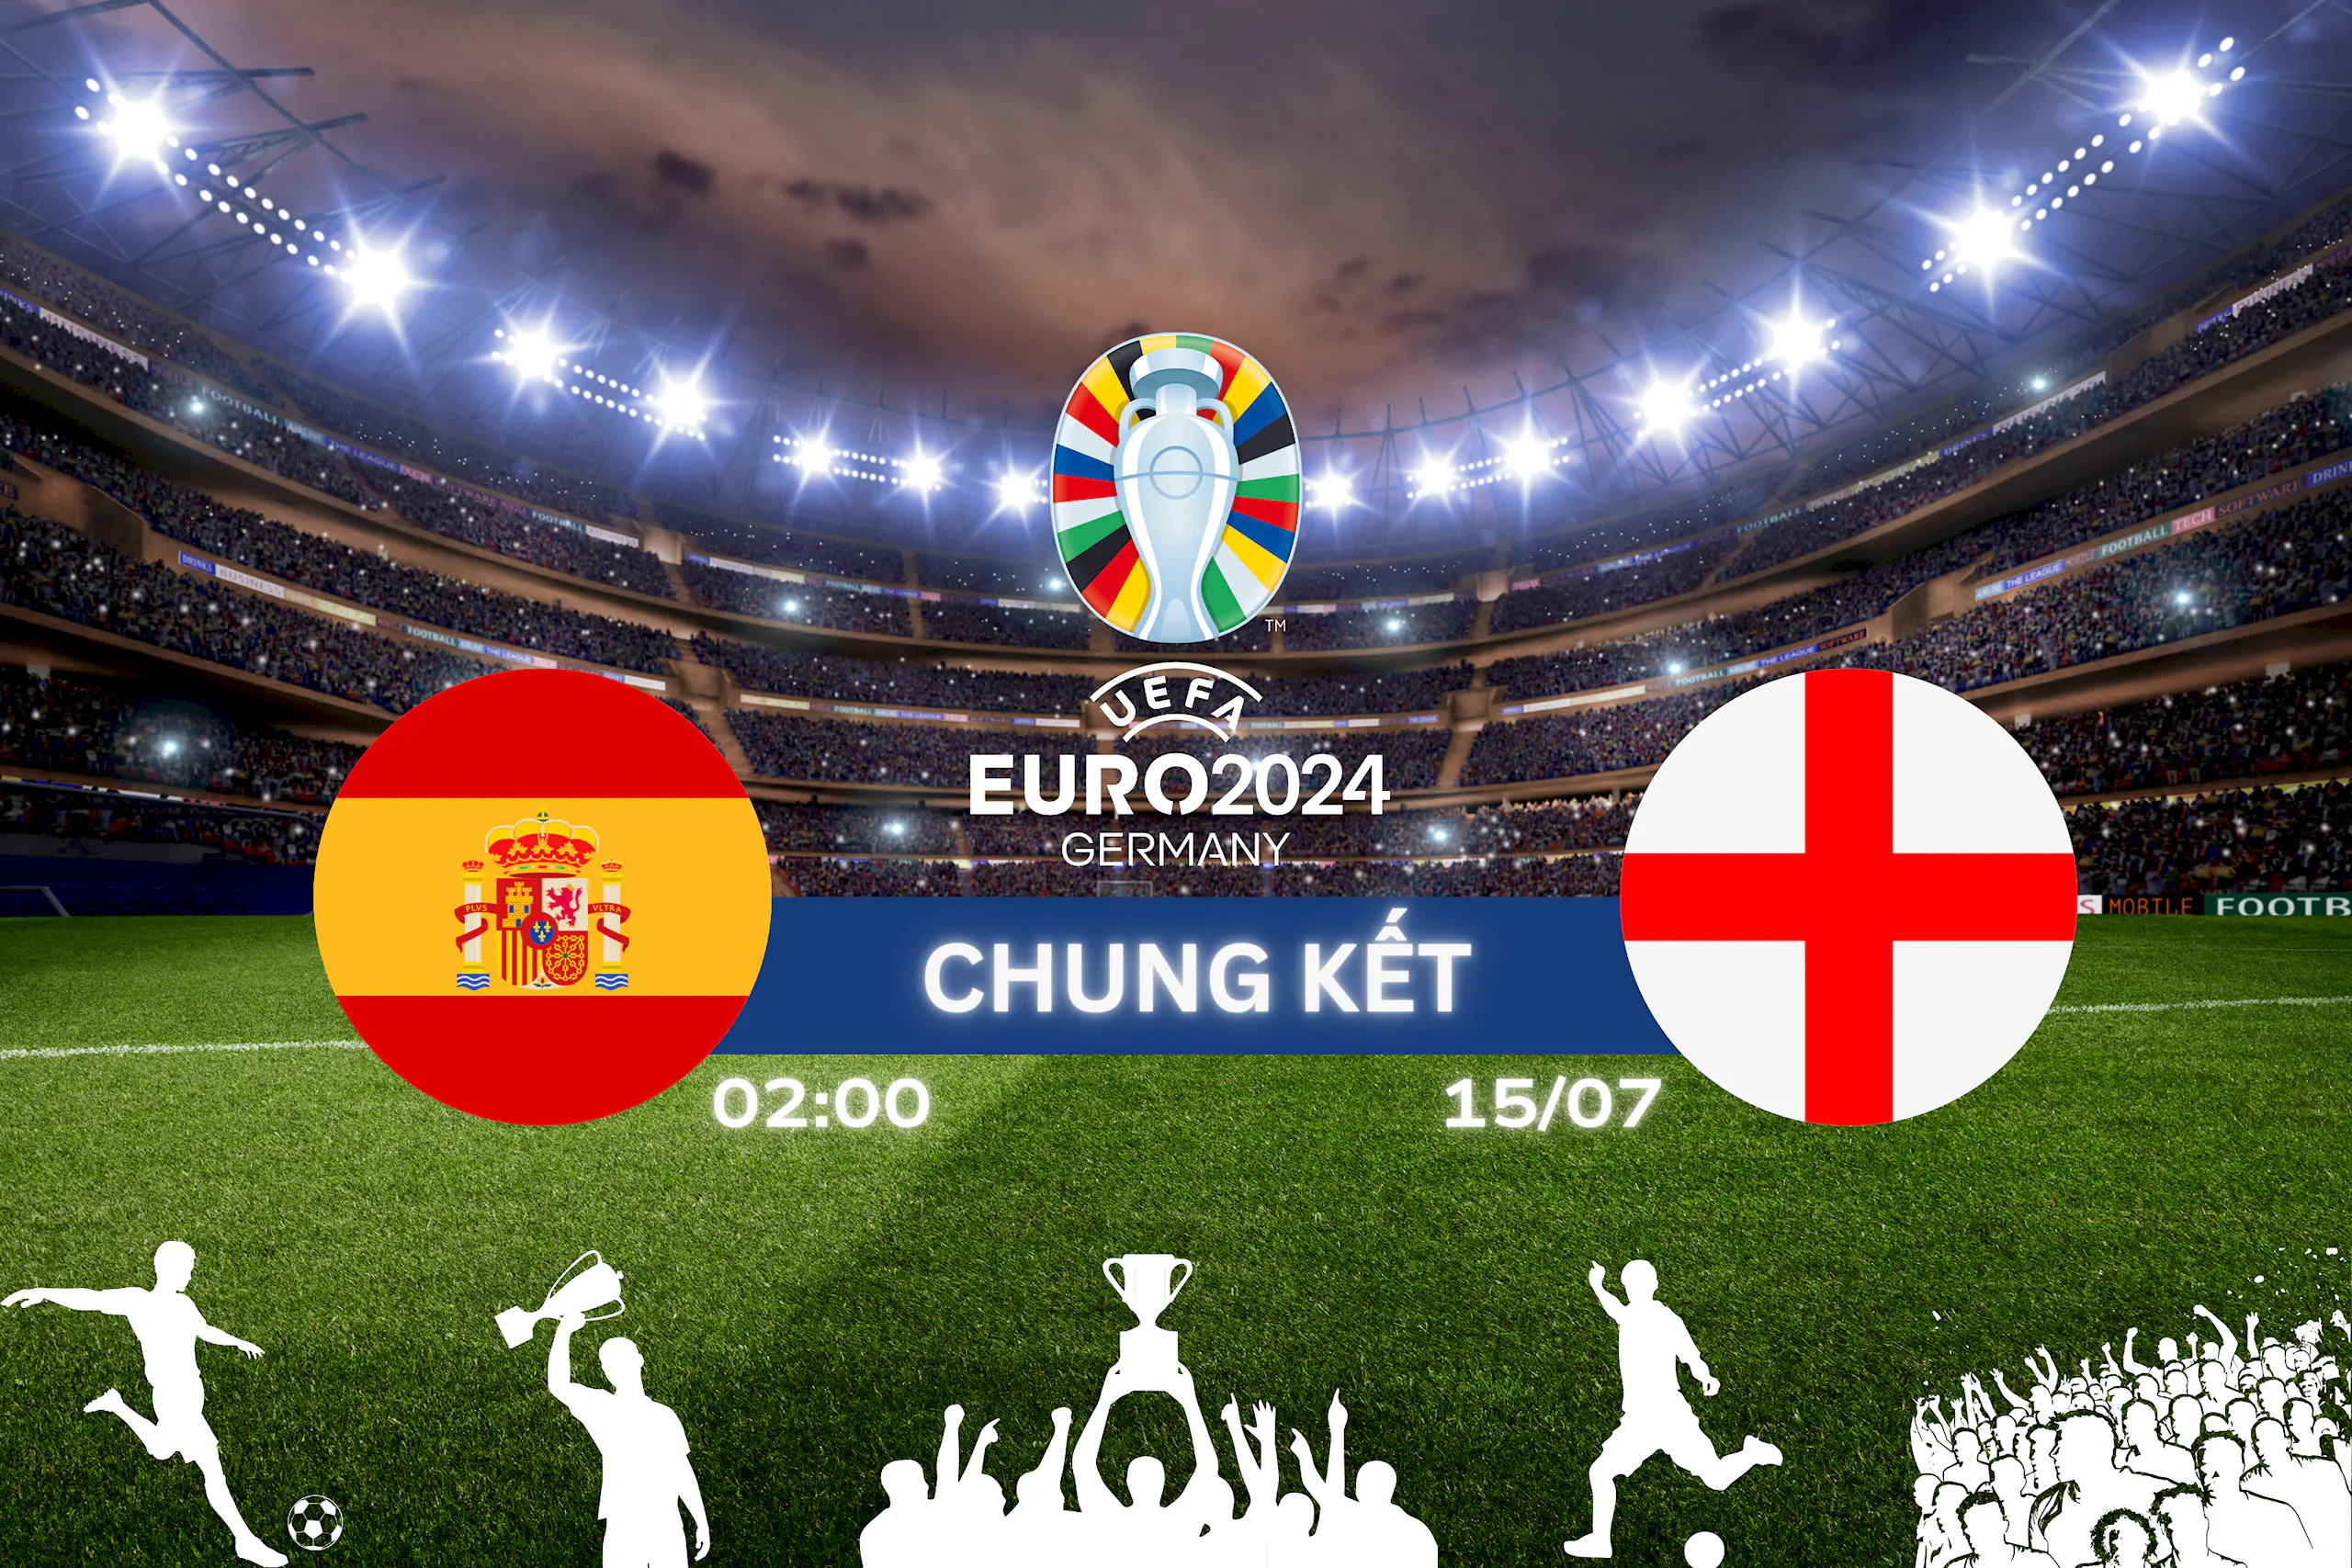 Chung kết EURO 2024: Tây Ban Nha chạm trán Anh tranh chiếc cúp vô địch ngày 15/07